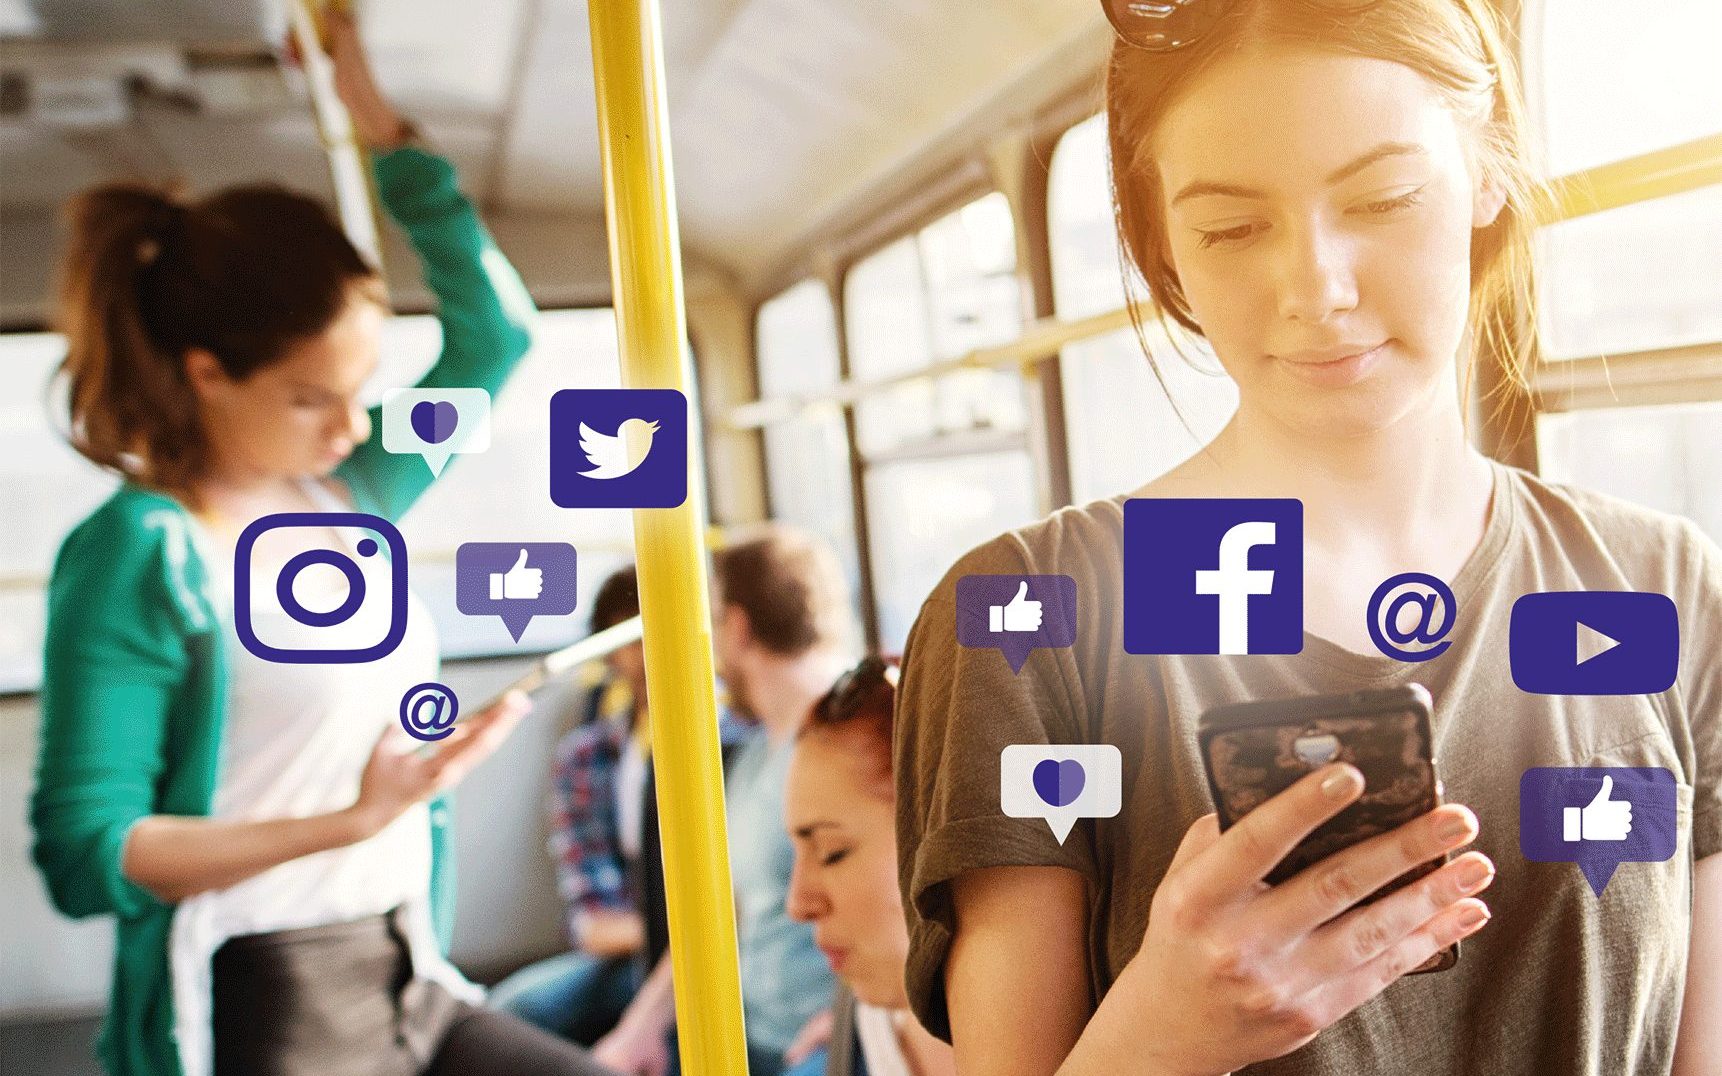 Henkilöillä on puhelimet kädessä bussissa ja esiin nousee eri sosiaalisen median tunnuksia.